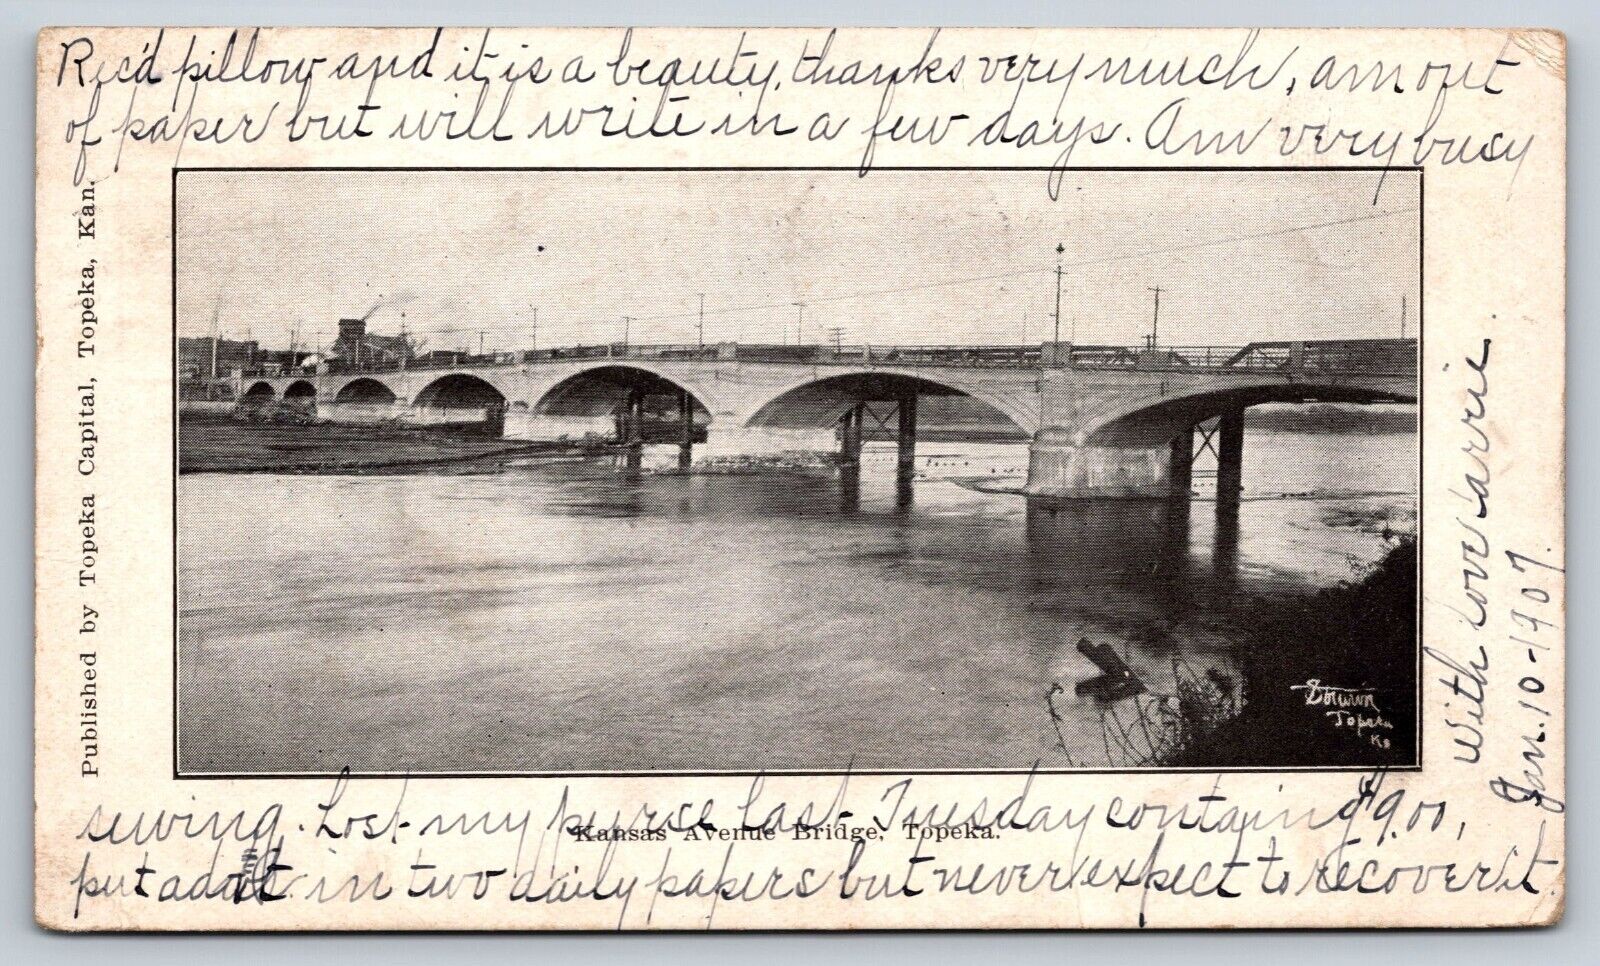 Kansas Avenue Bridge Topeka Kansas Postcard 1907